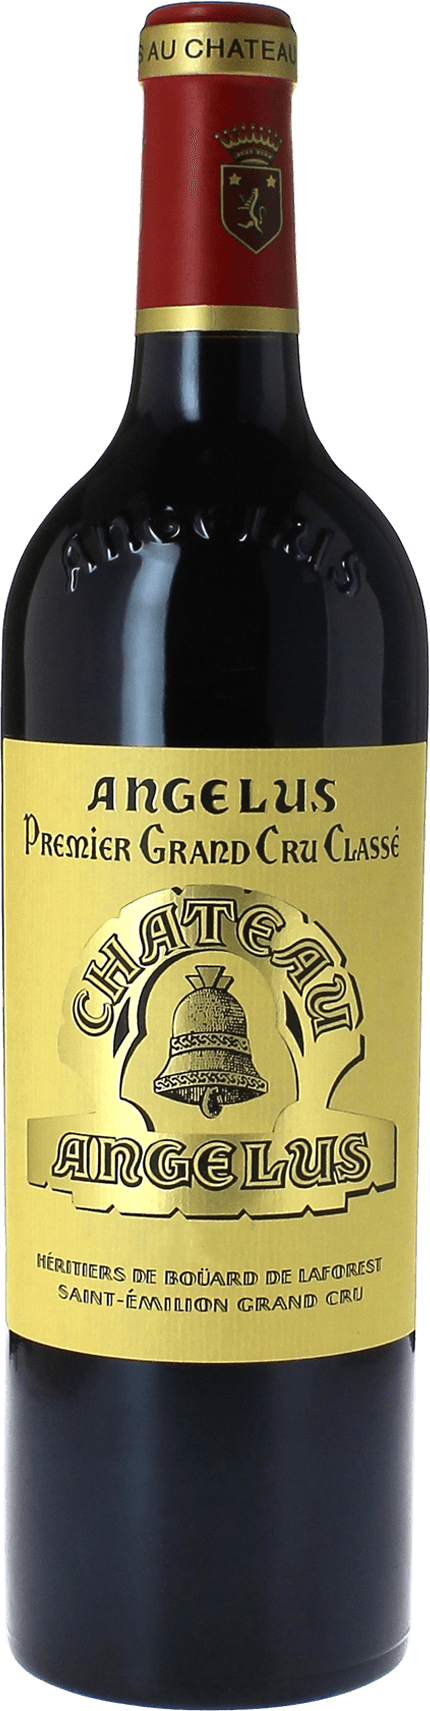 Angelus 1996 1er Grand cru B class Saint-Emilion, Bordeaux rouge